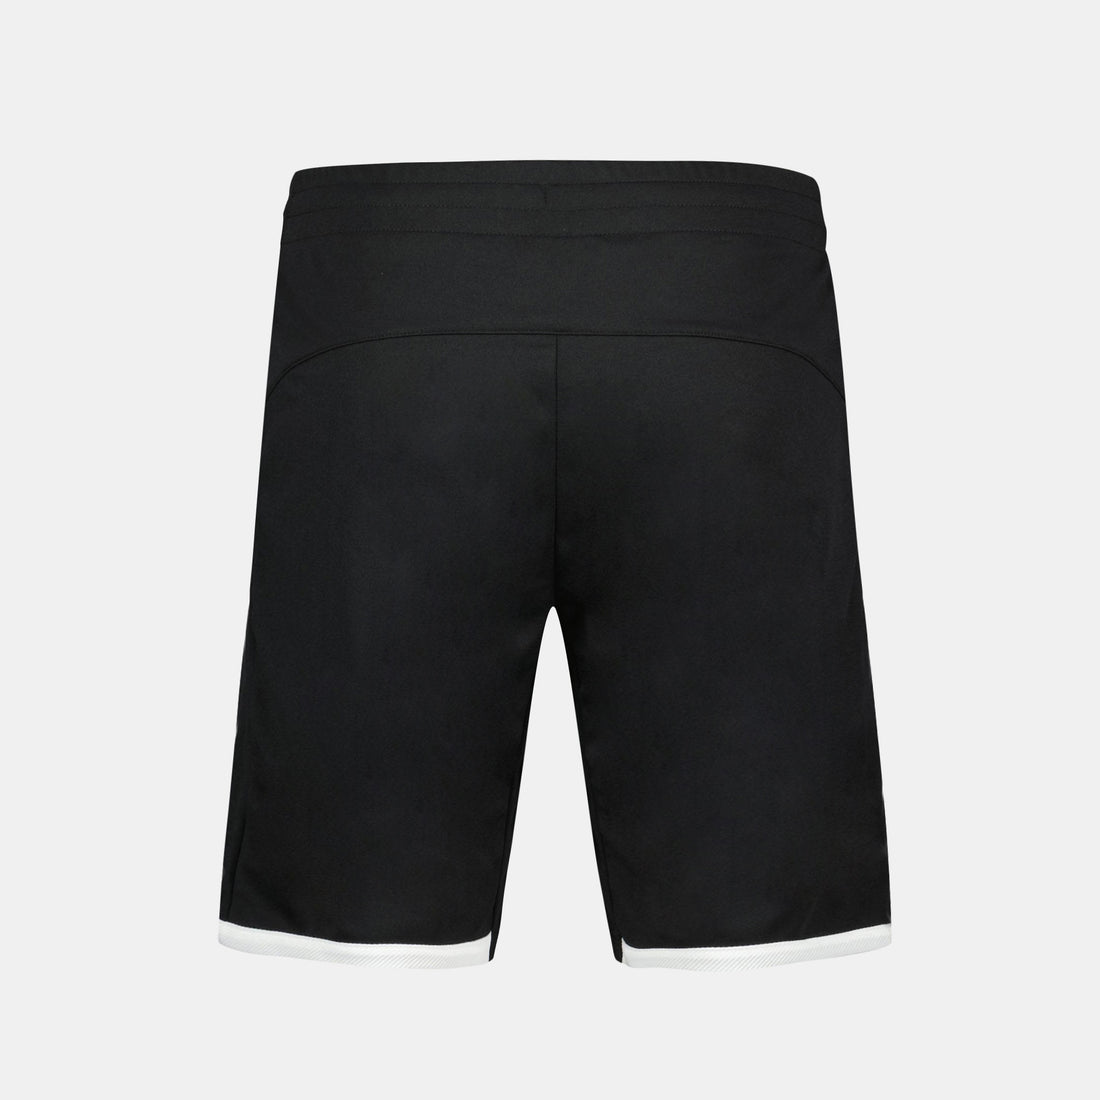 2321228-TENNIS Short N°3 M black  | Pantaloncini Uomo